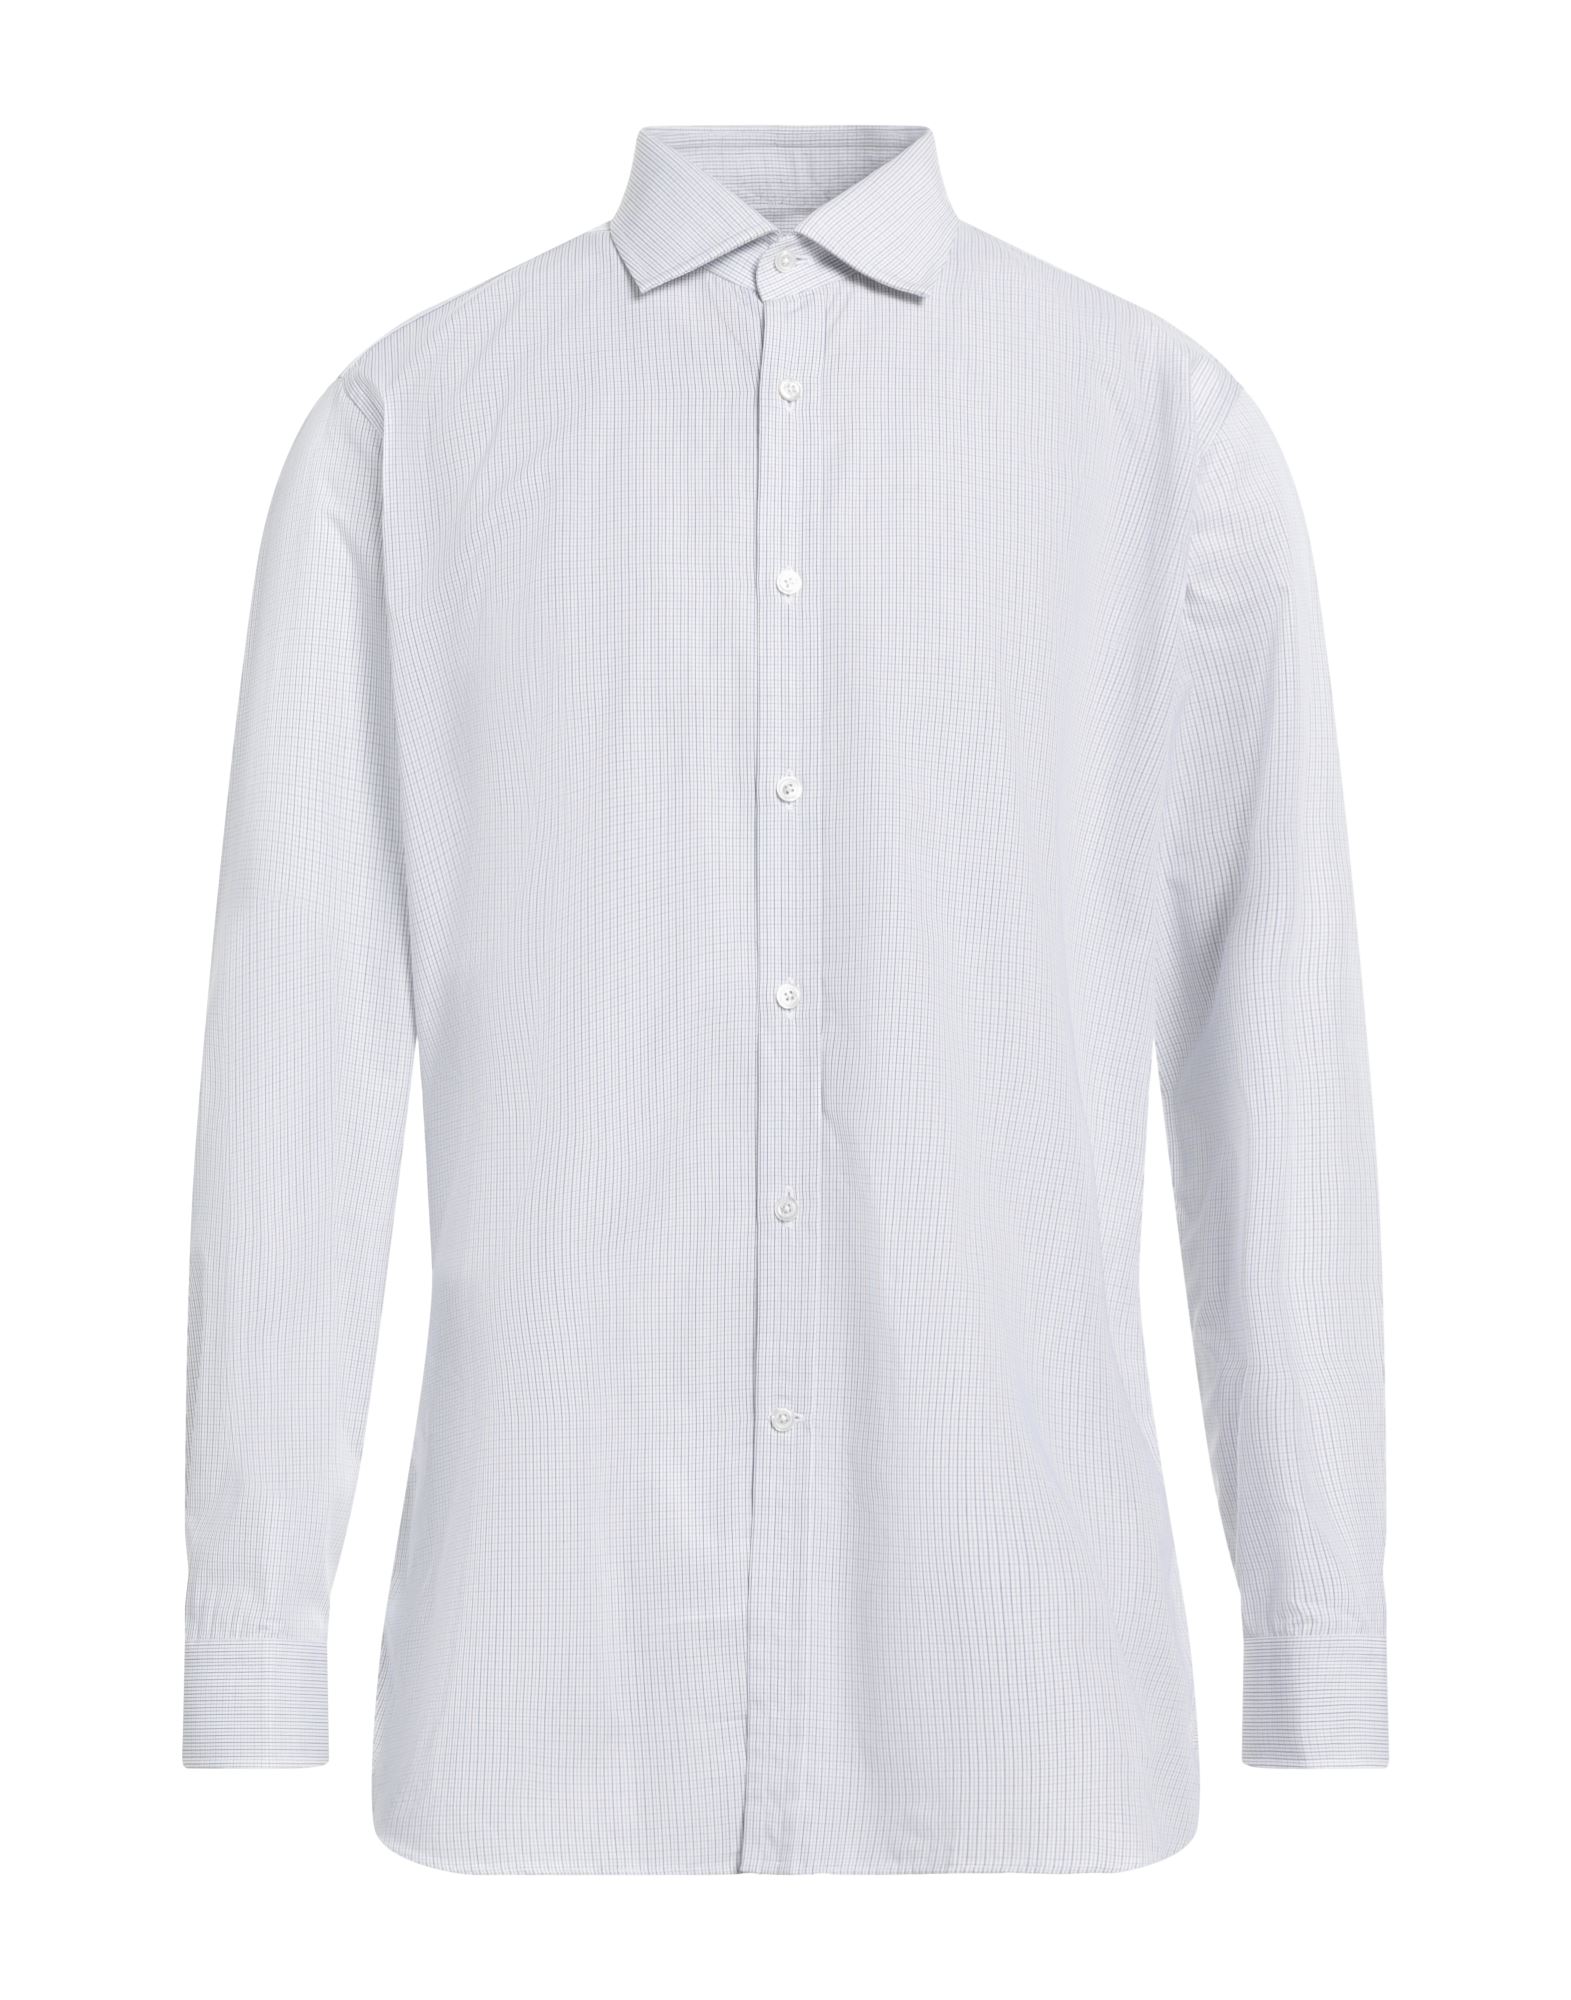 100%新品SALEY350 新品 ダンヒル dunhill 長袖 ワイシャツ サイズLL シャツ